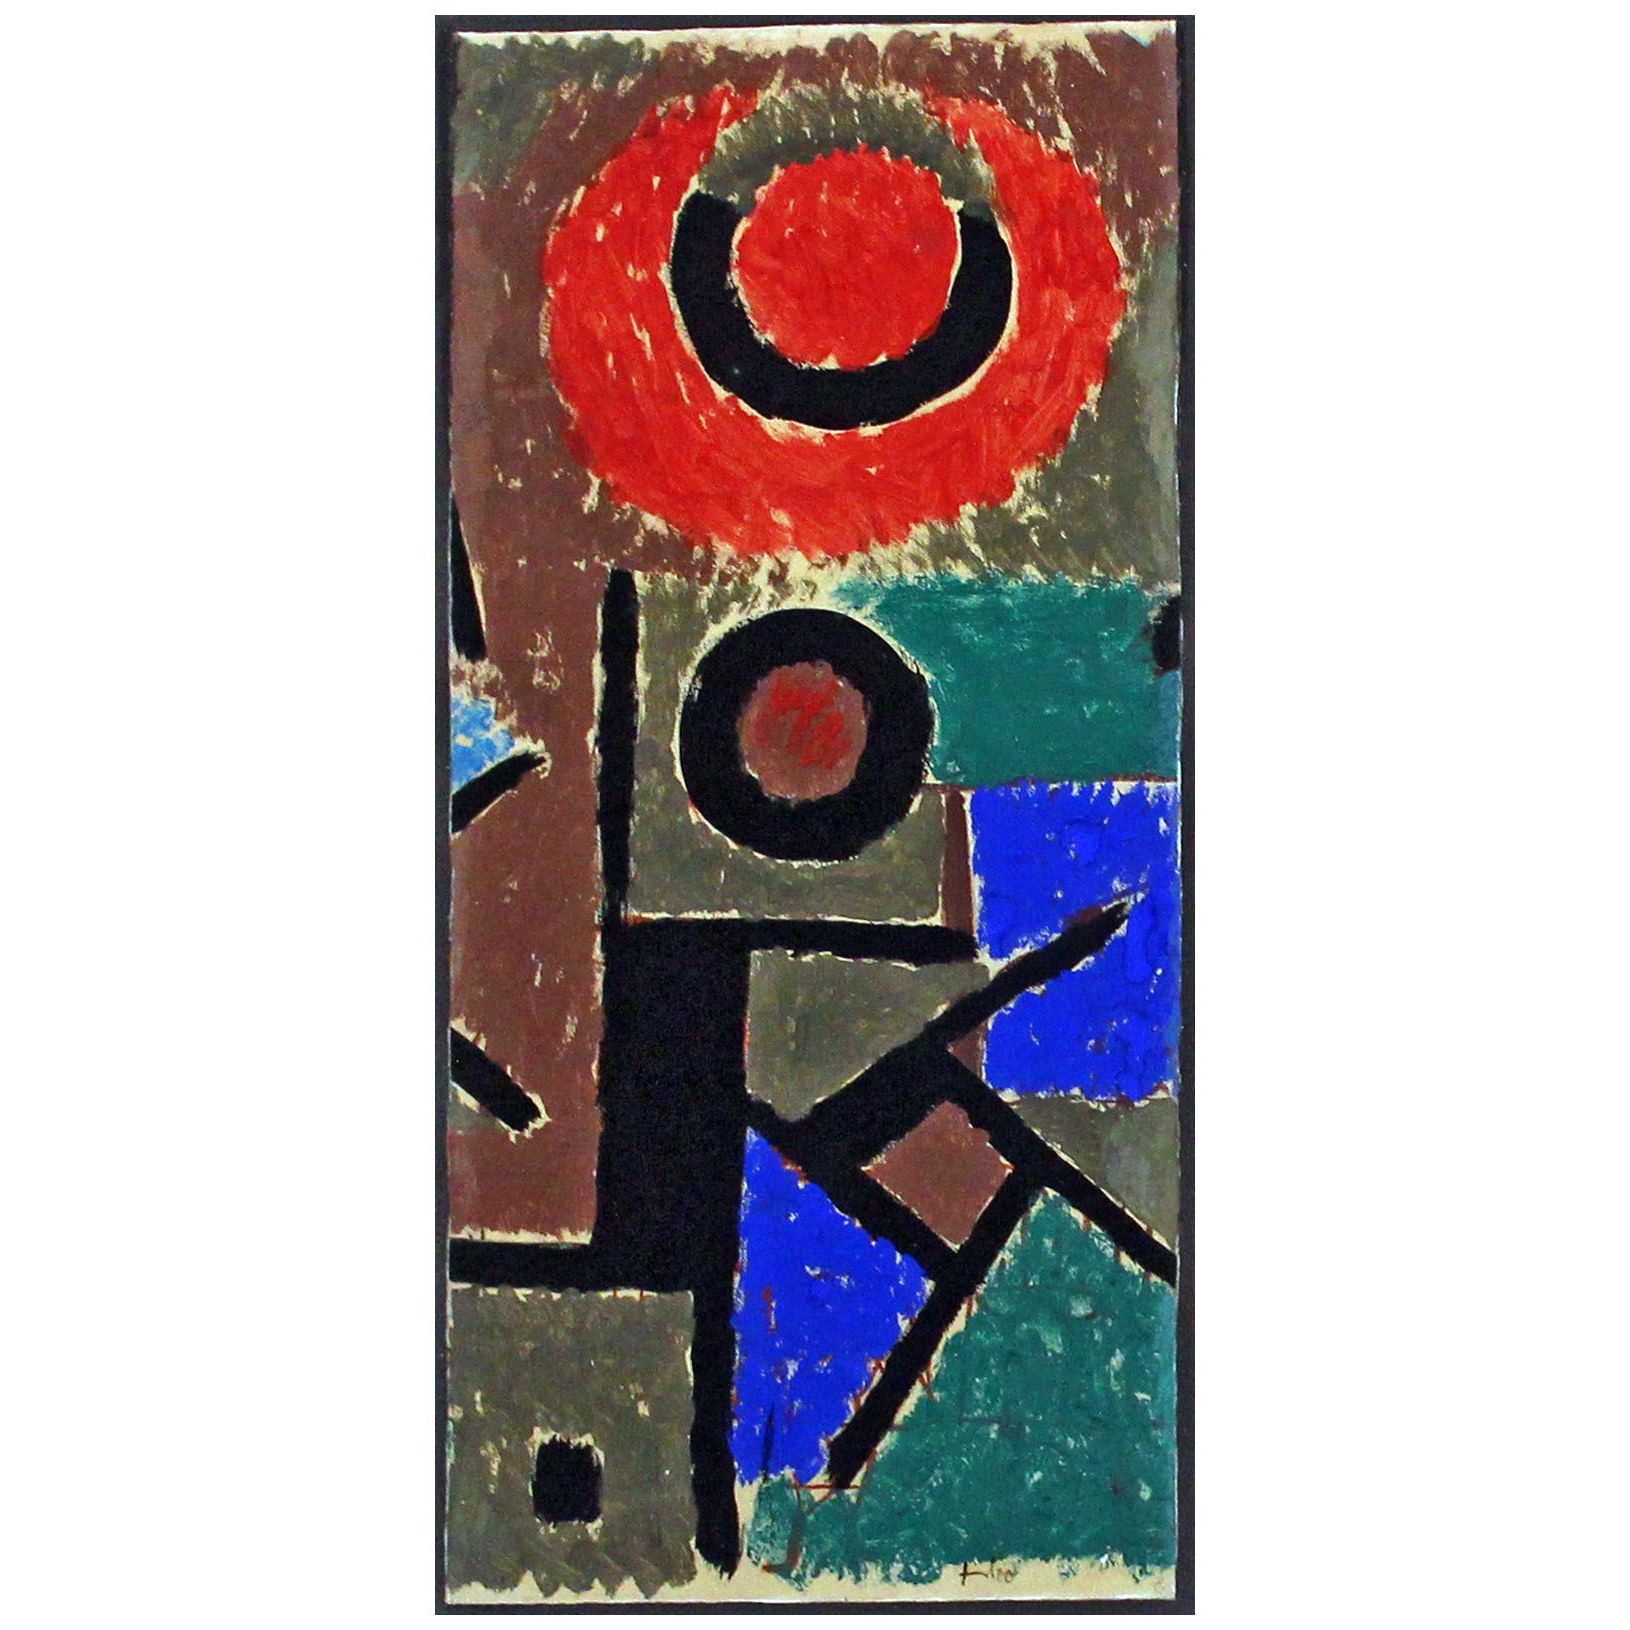 Paul Klee. Heisse Botschaft. 1937. K20 Dusseldorf